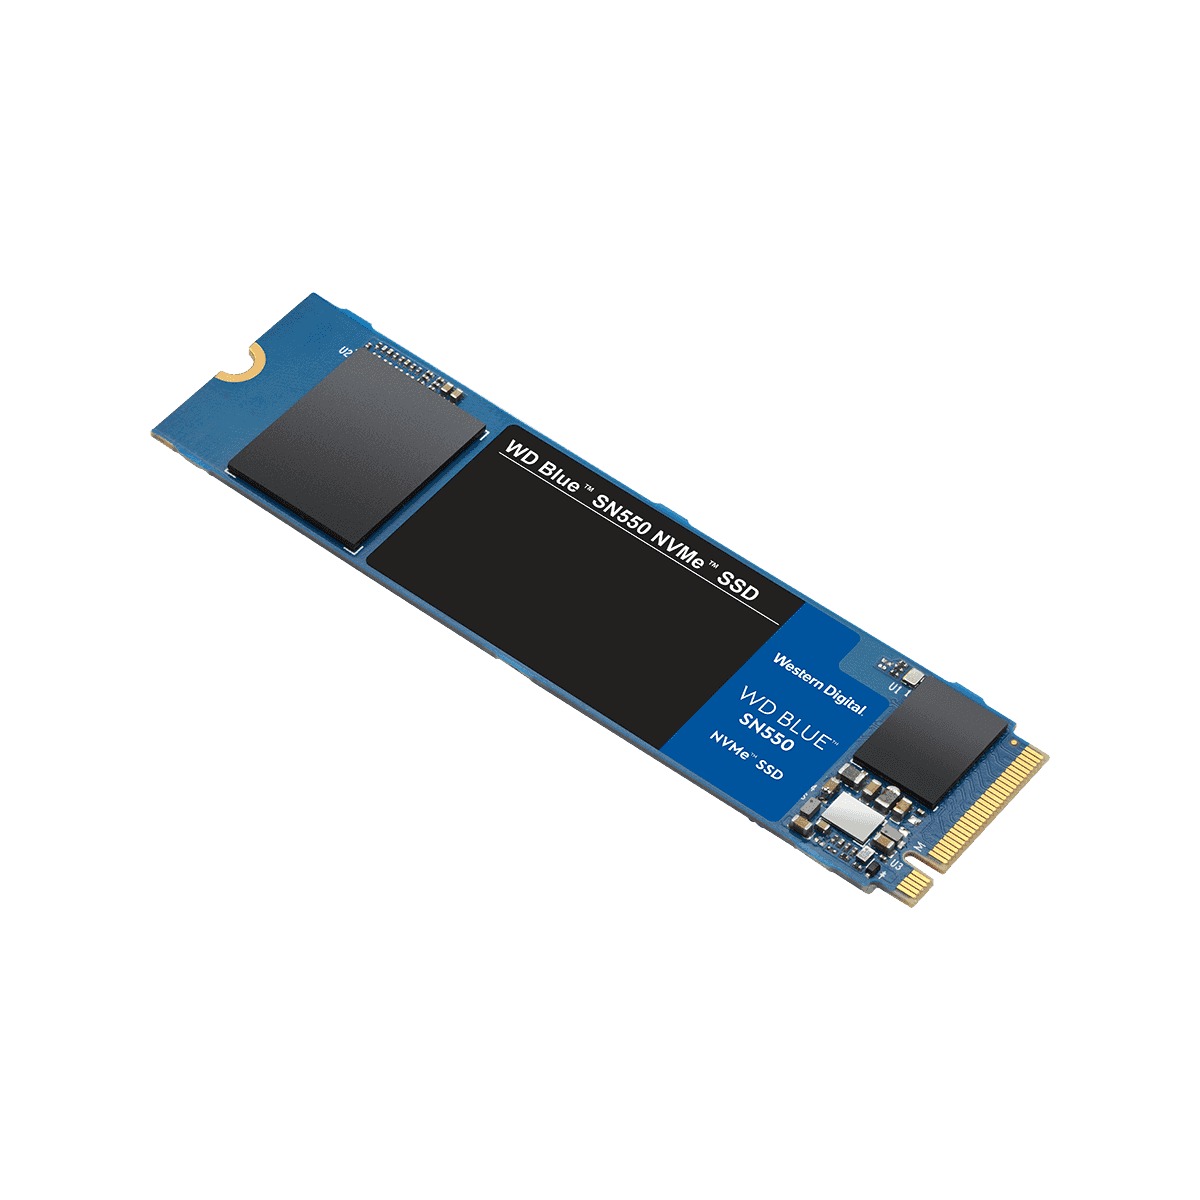 M.2 SSD 500GB Western Digital SN550